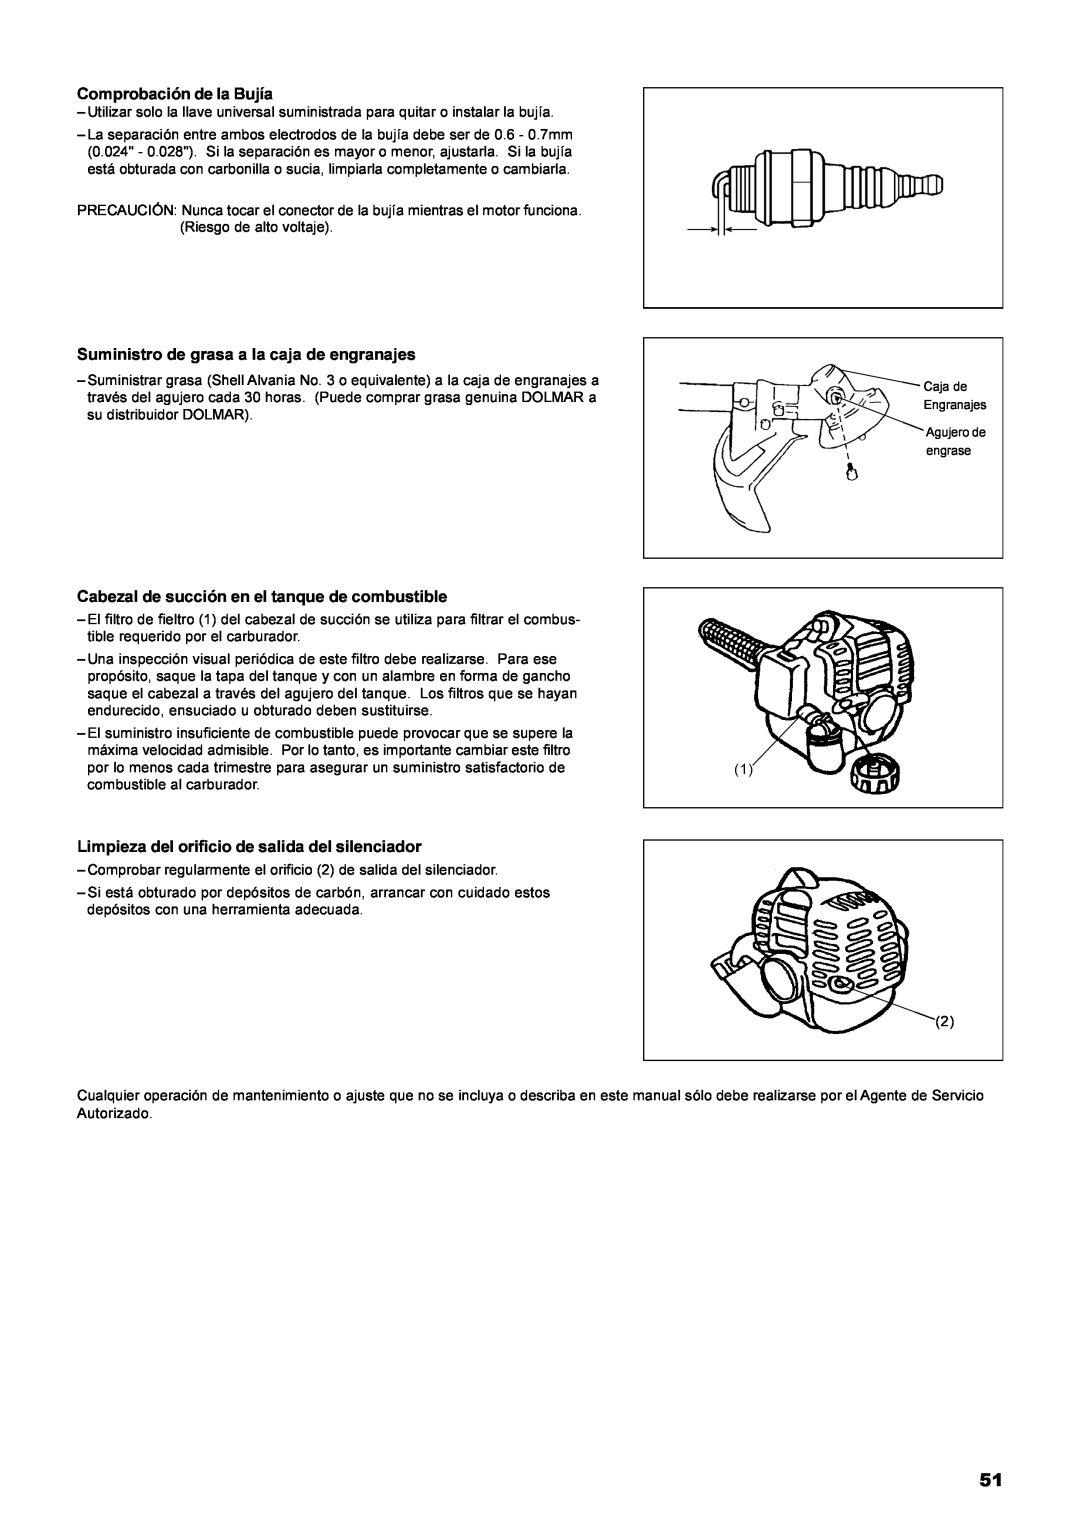 Dolmar MS-22C instruction manual Comprobación de la Bujía, Suministro de grasa a la caja de engranajes 